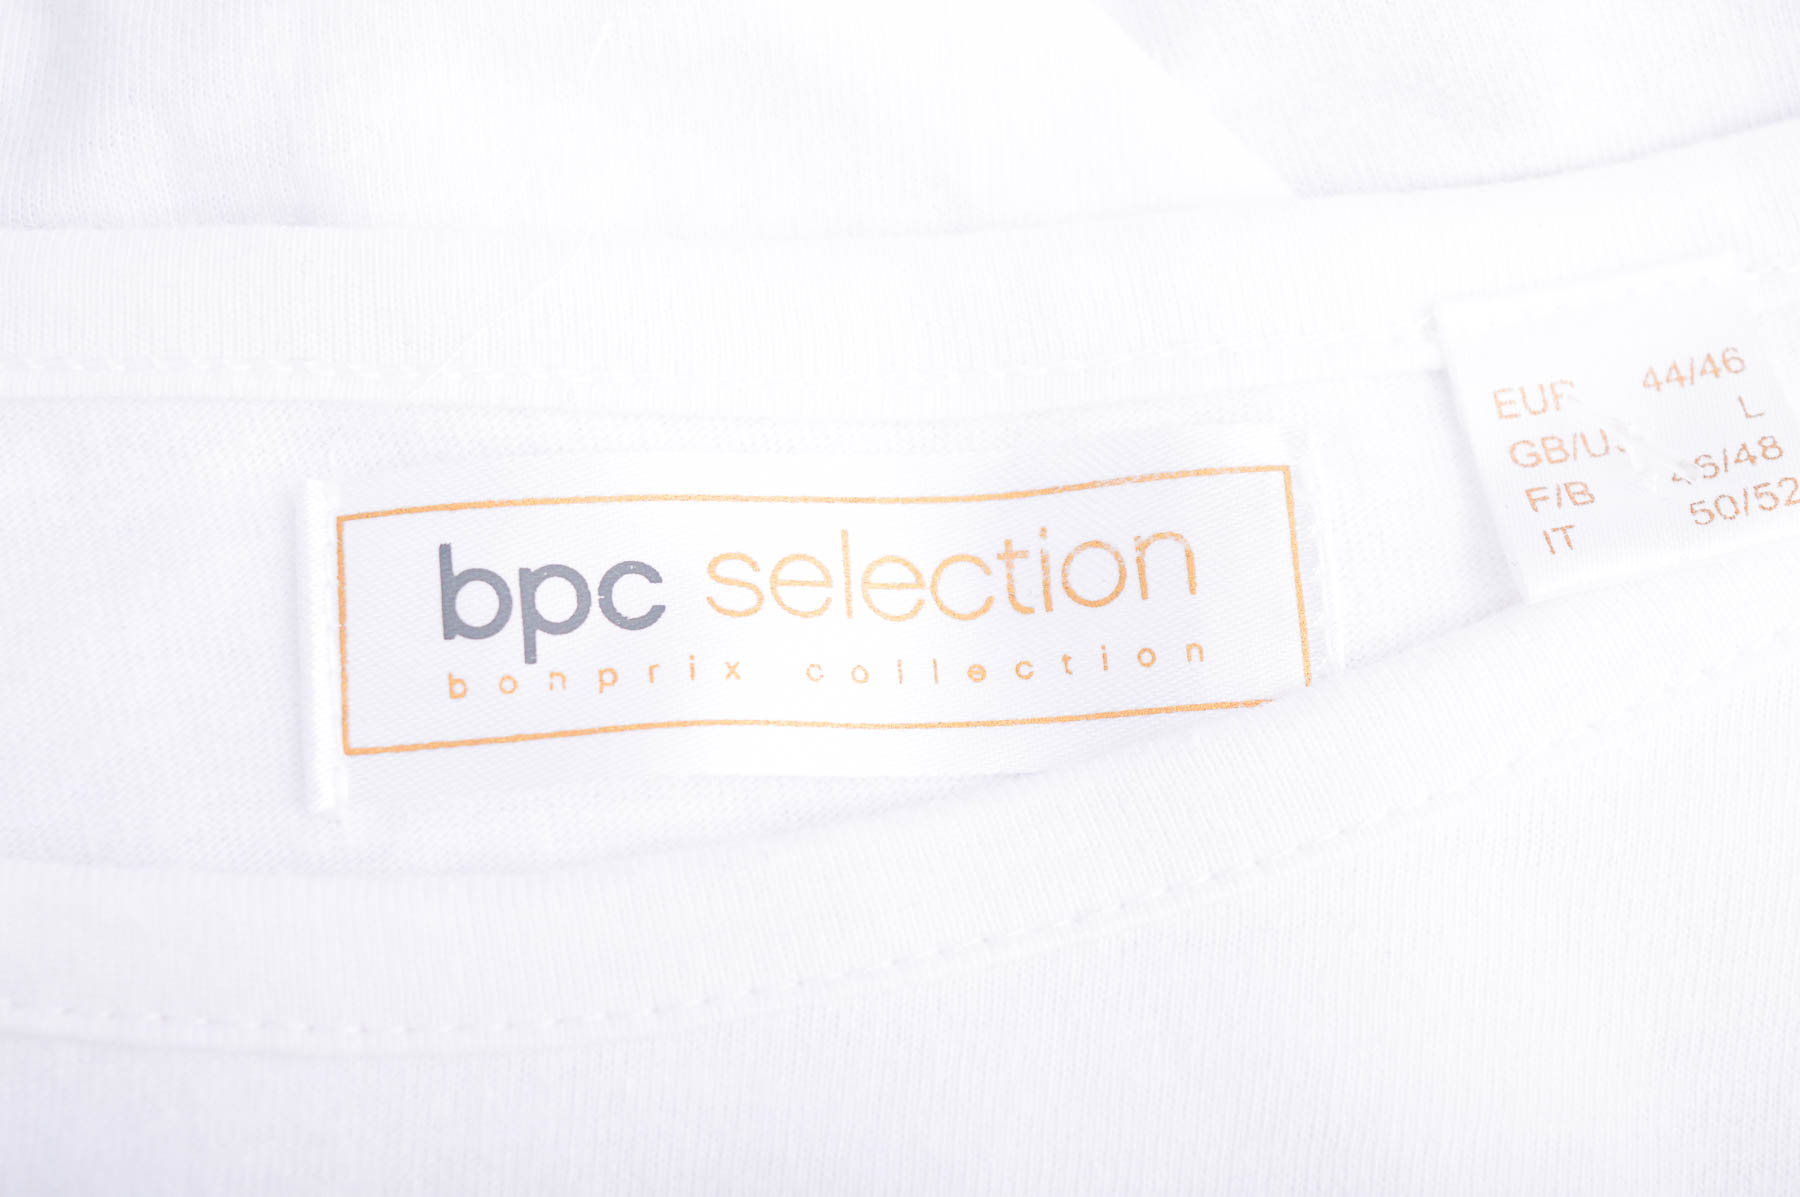 Γυναικείο μπλουζάκι - Bpc selection bonprix collection - 2